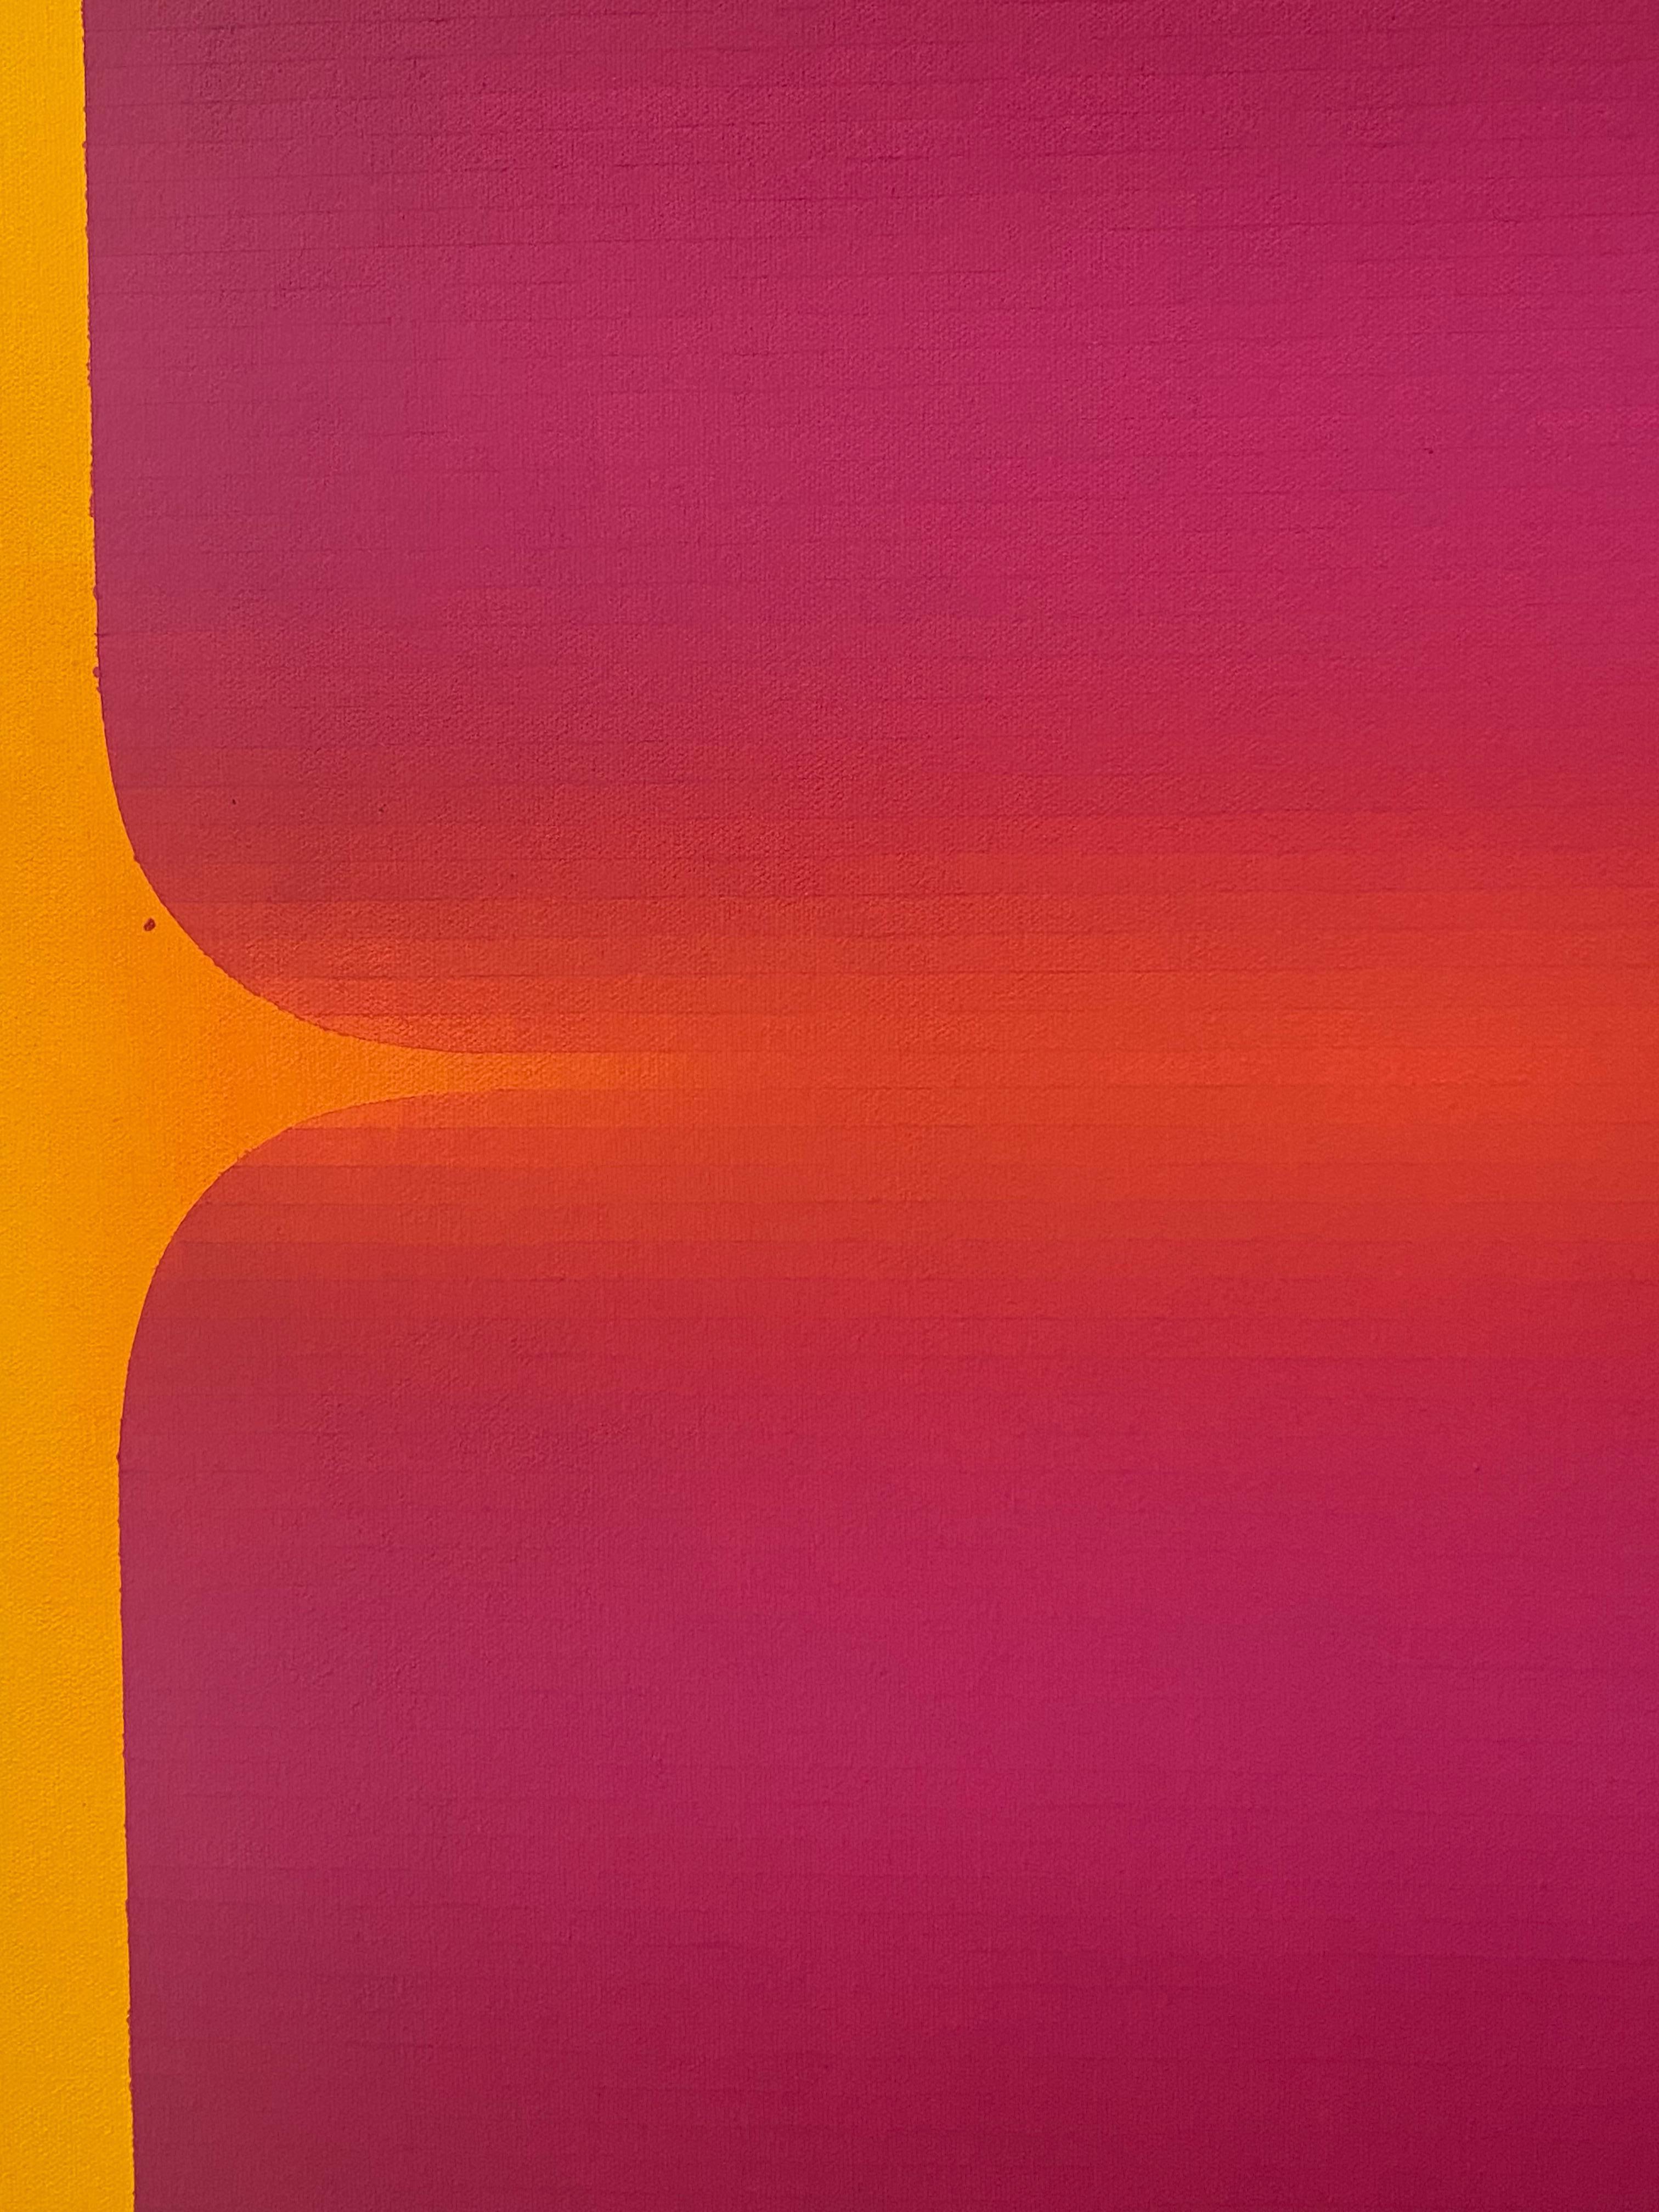 Rome Sieben, Goldgelb, Marineblau, Indigo, Heißrosa, Orange Farbverlaufstreifen (Rot), Abstract Painting, von Audrey Stone